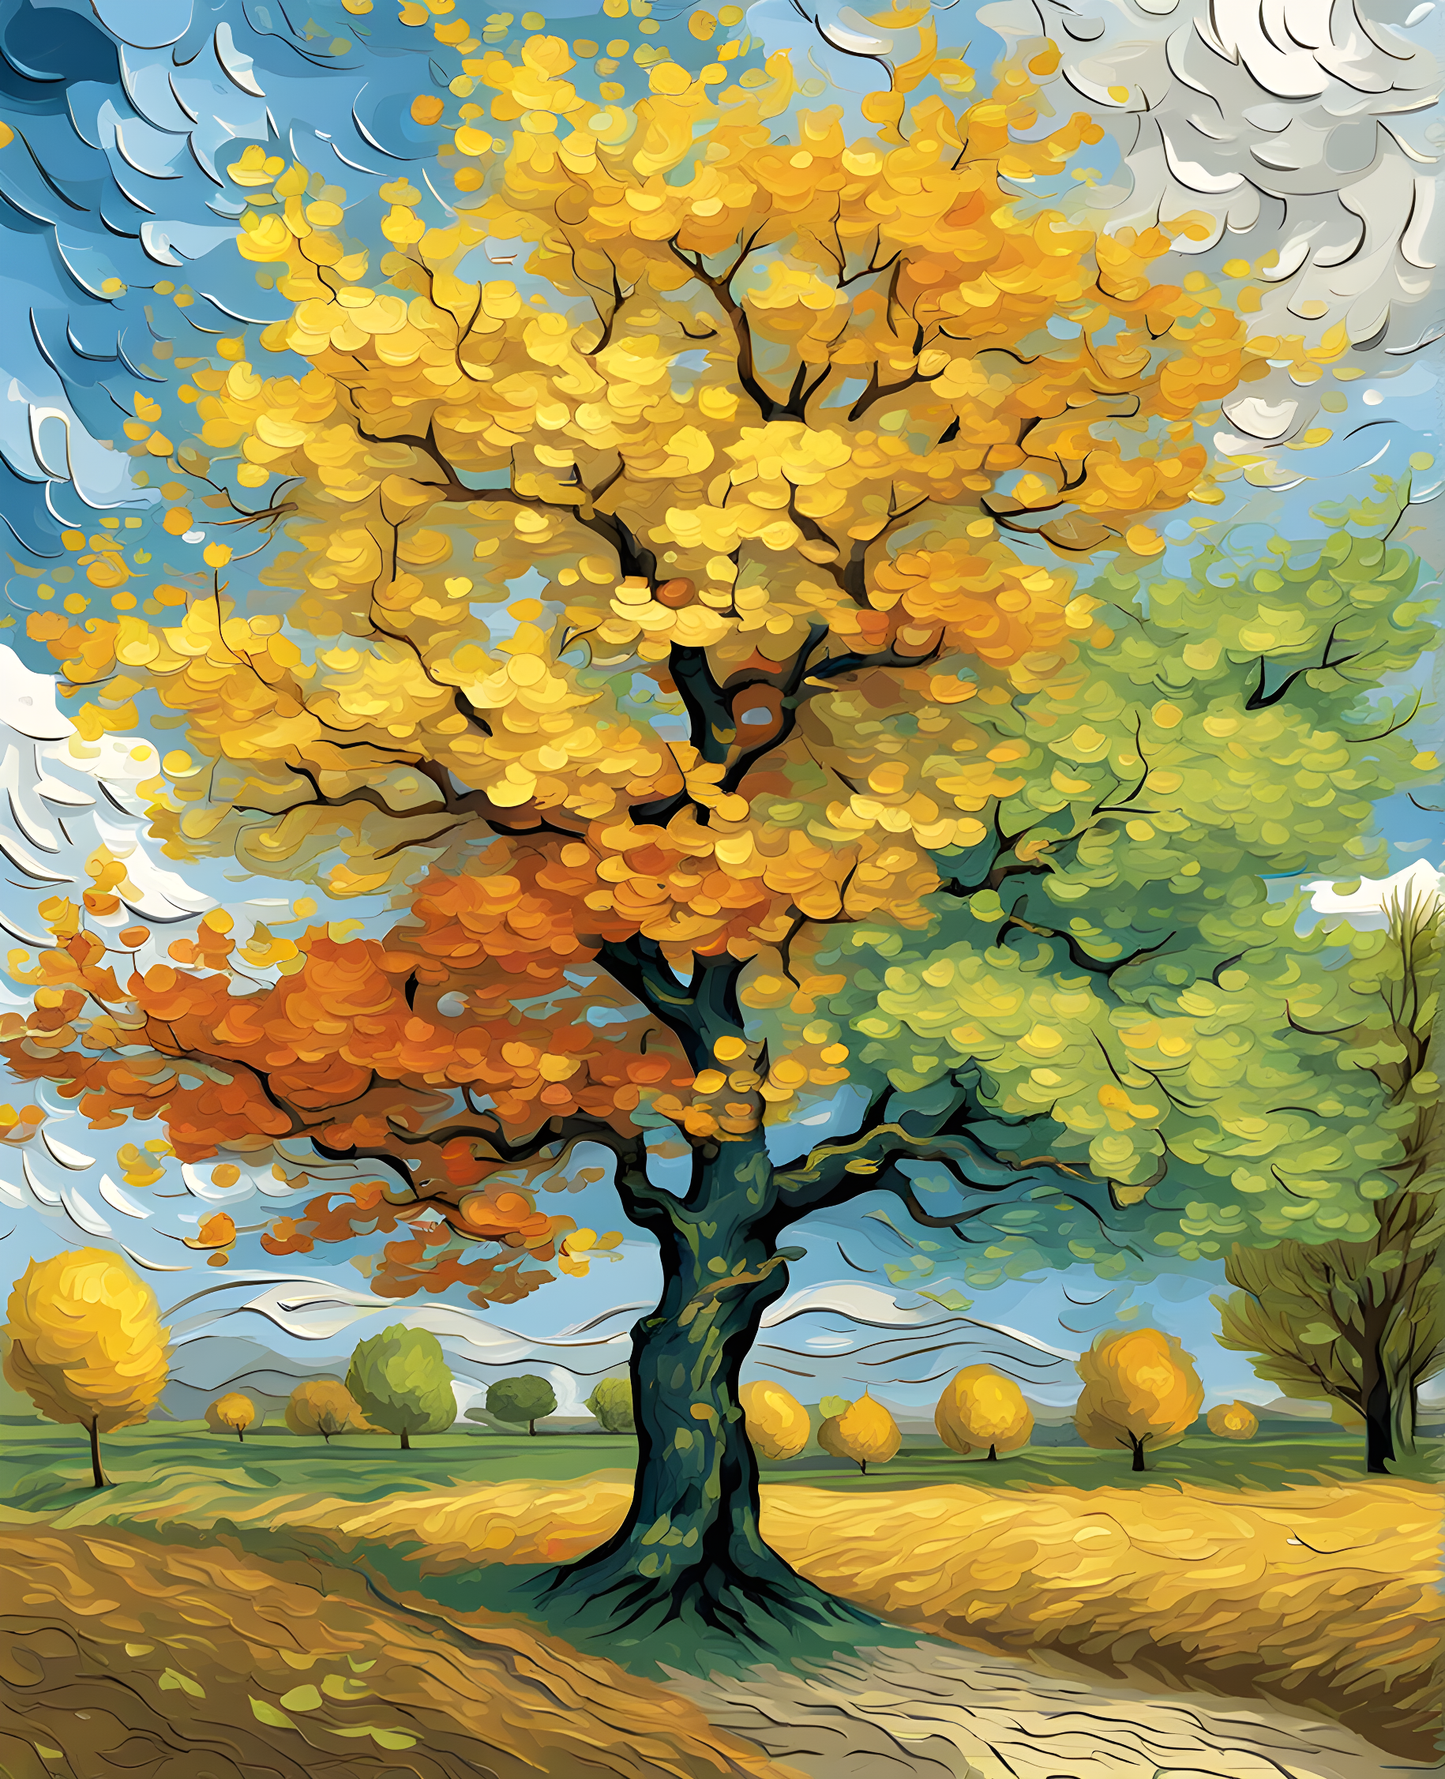 Four Seasons Tree (1) - Van-Go Paint-By-Number Kit